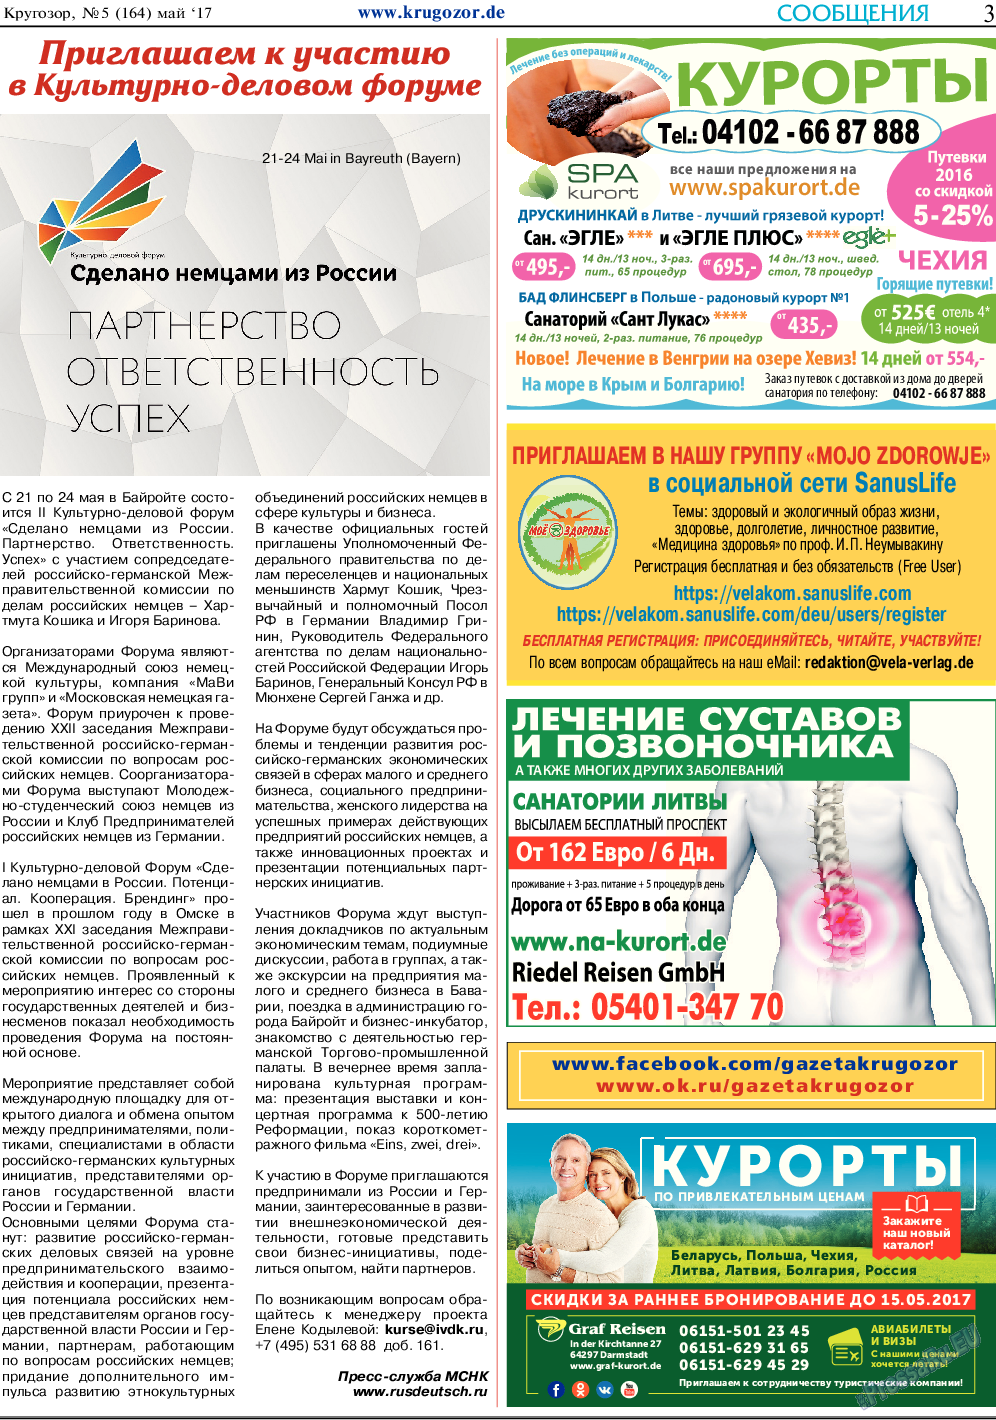 Кругозор, газета. 2017 №5 стр.3